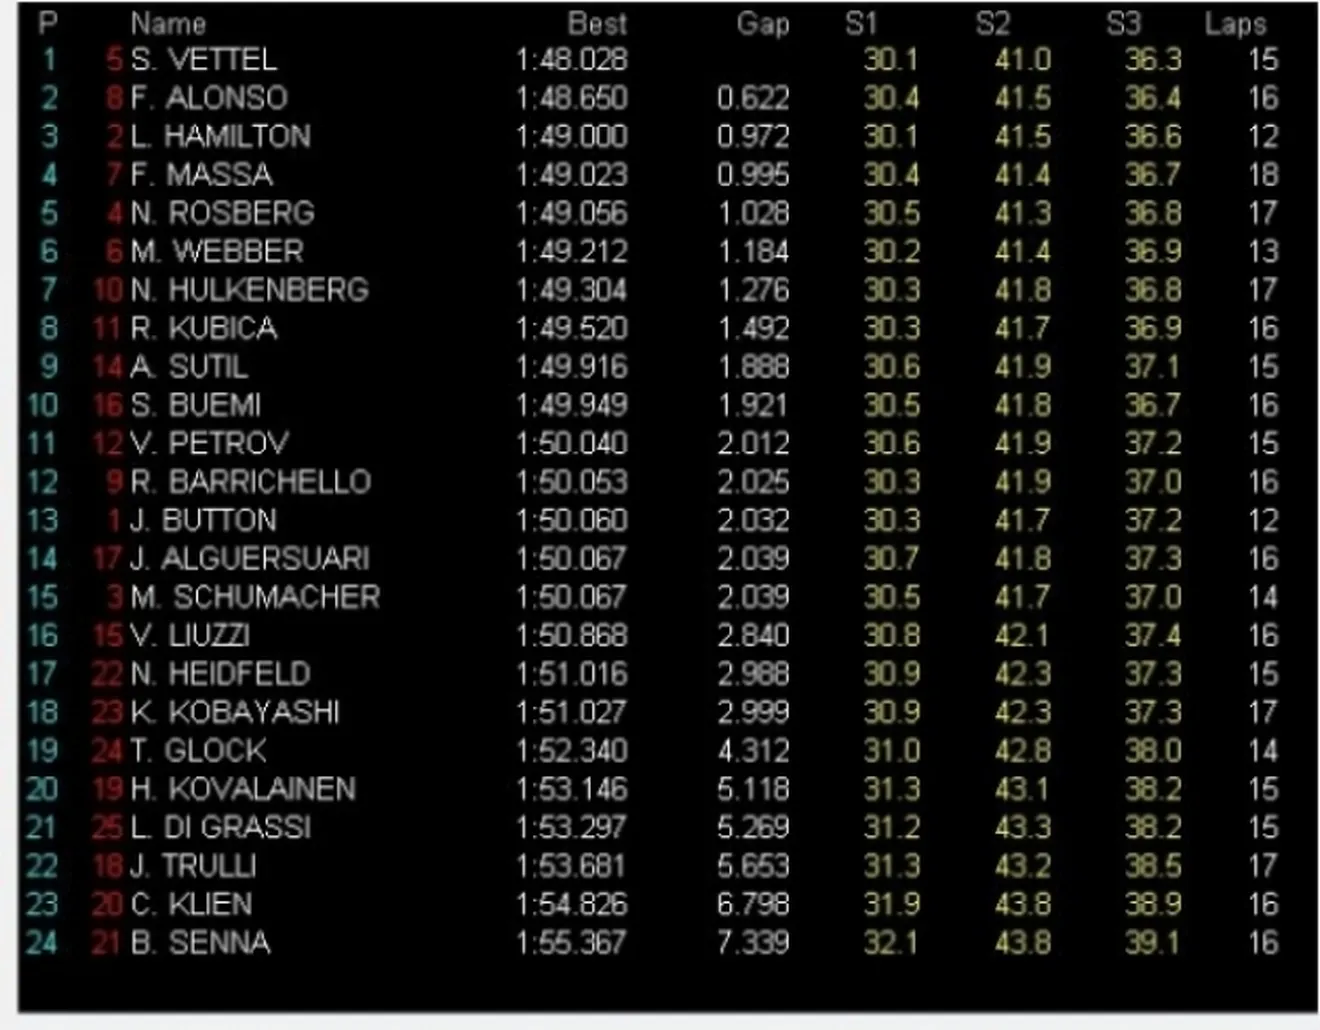 GP Singapur, Libres 3: Vettel nuevamente el más rápido, Alonso segundo.